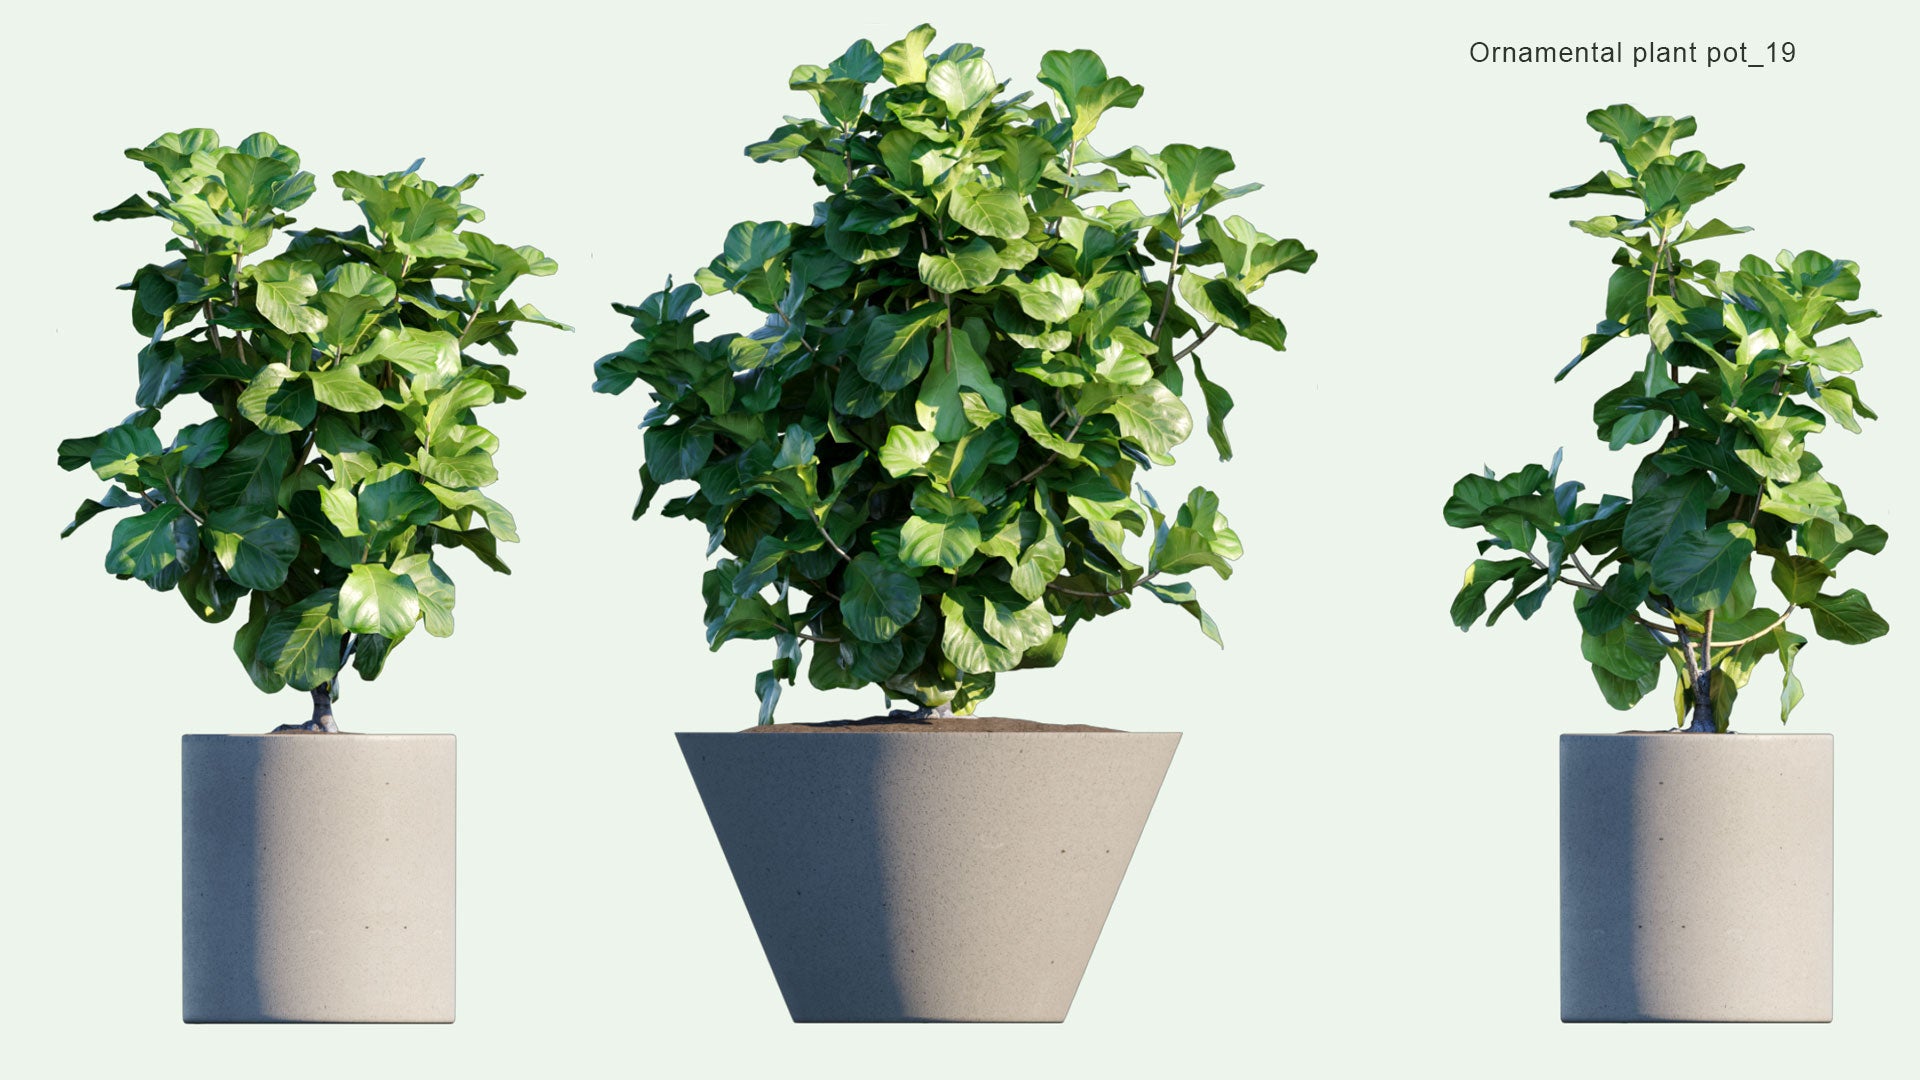 2D Ornamental Pot Plant 19 - Ficus Lyrata